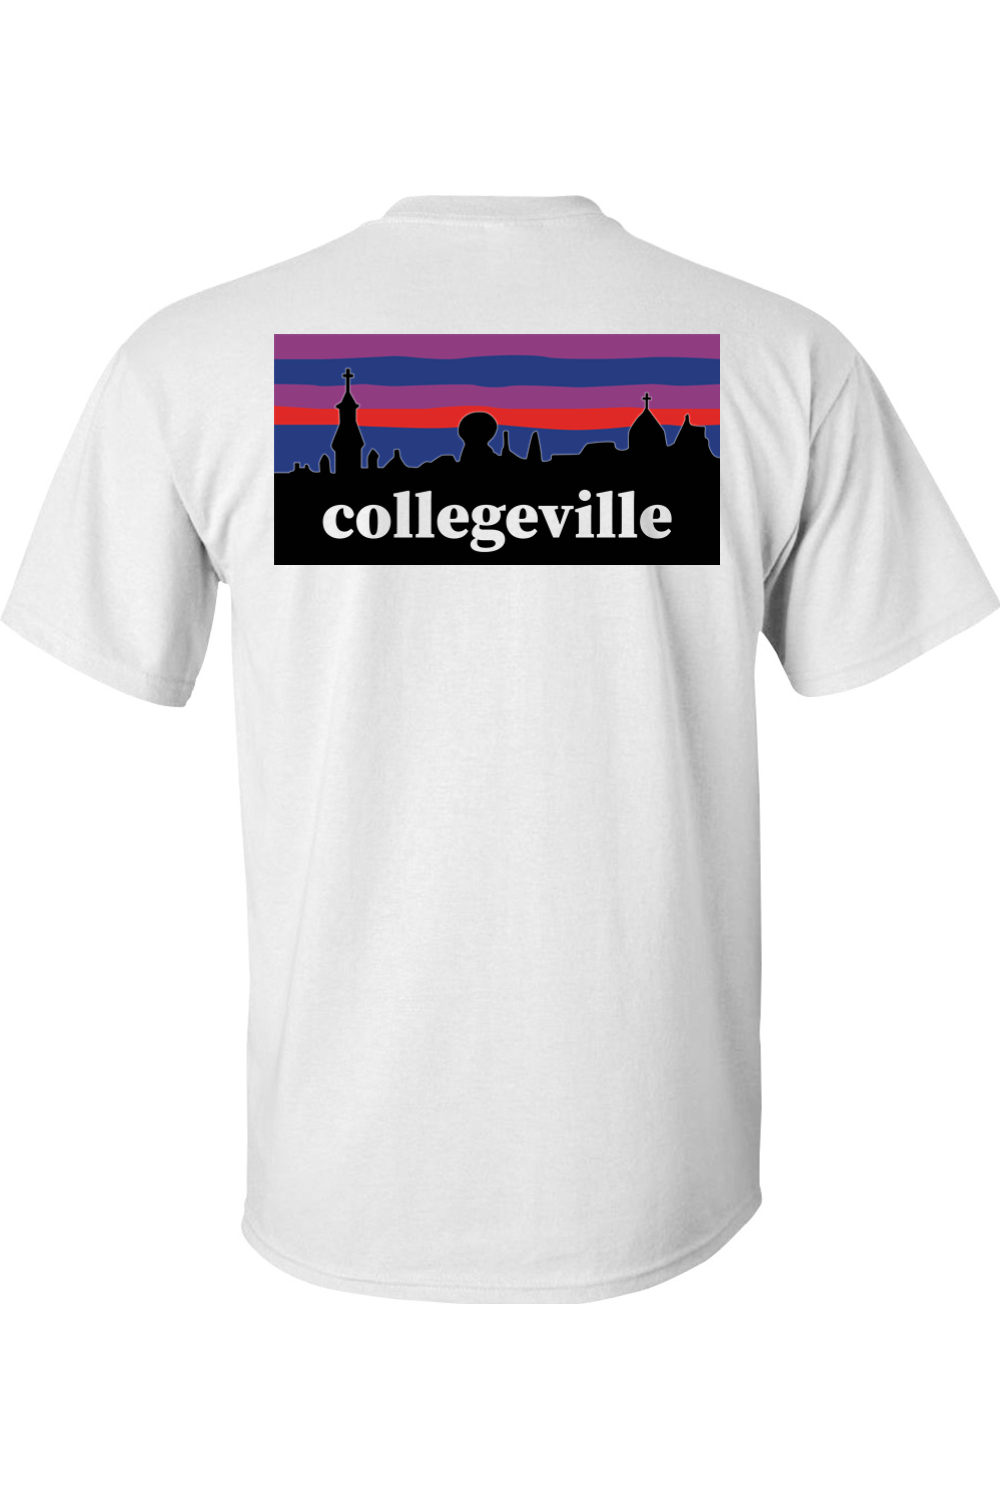 Collegeville T-Shirt